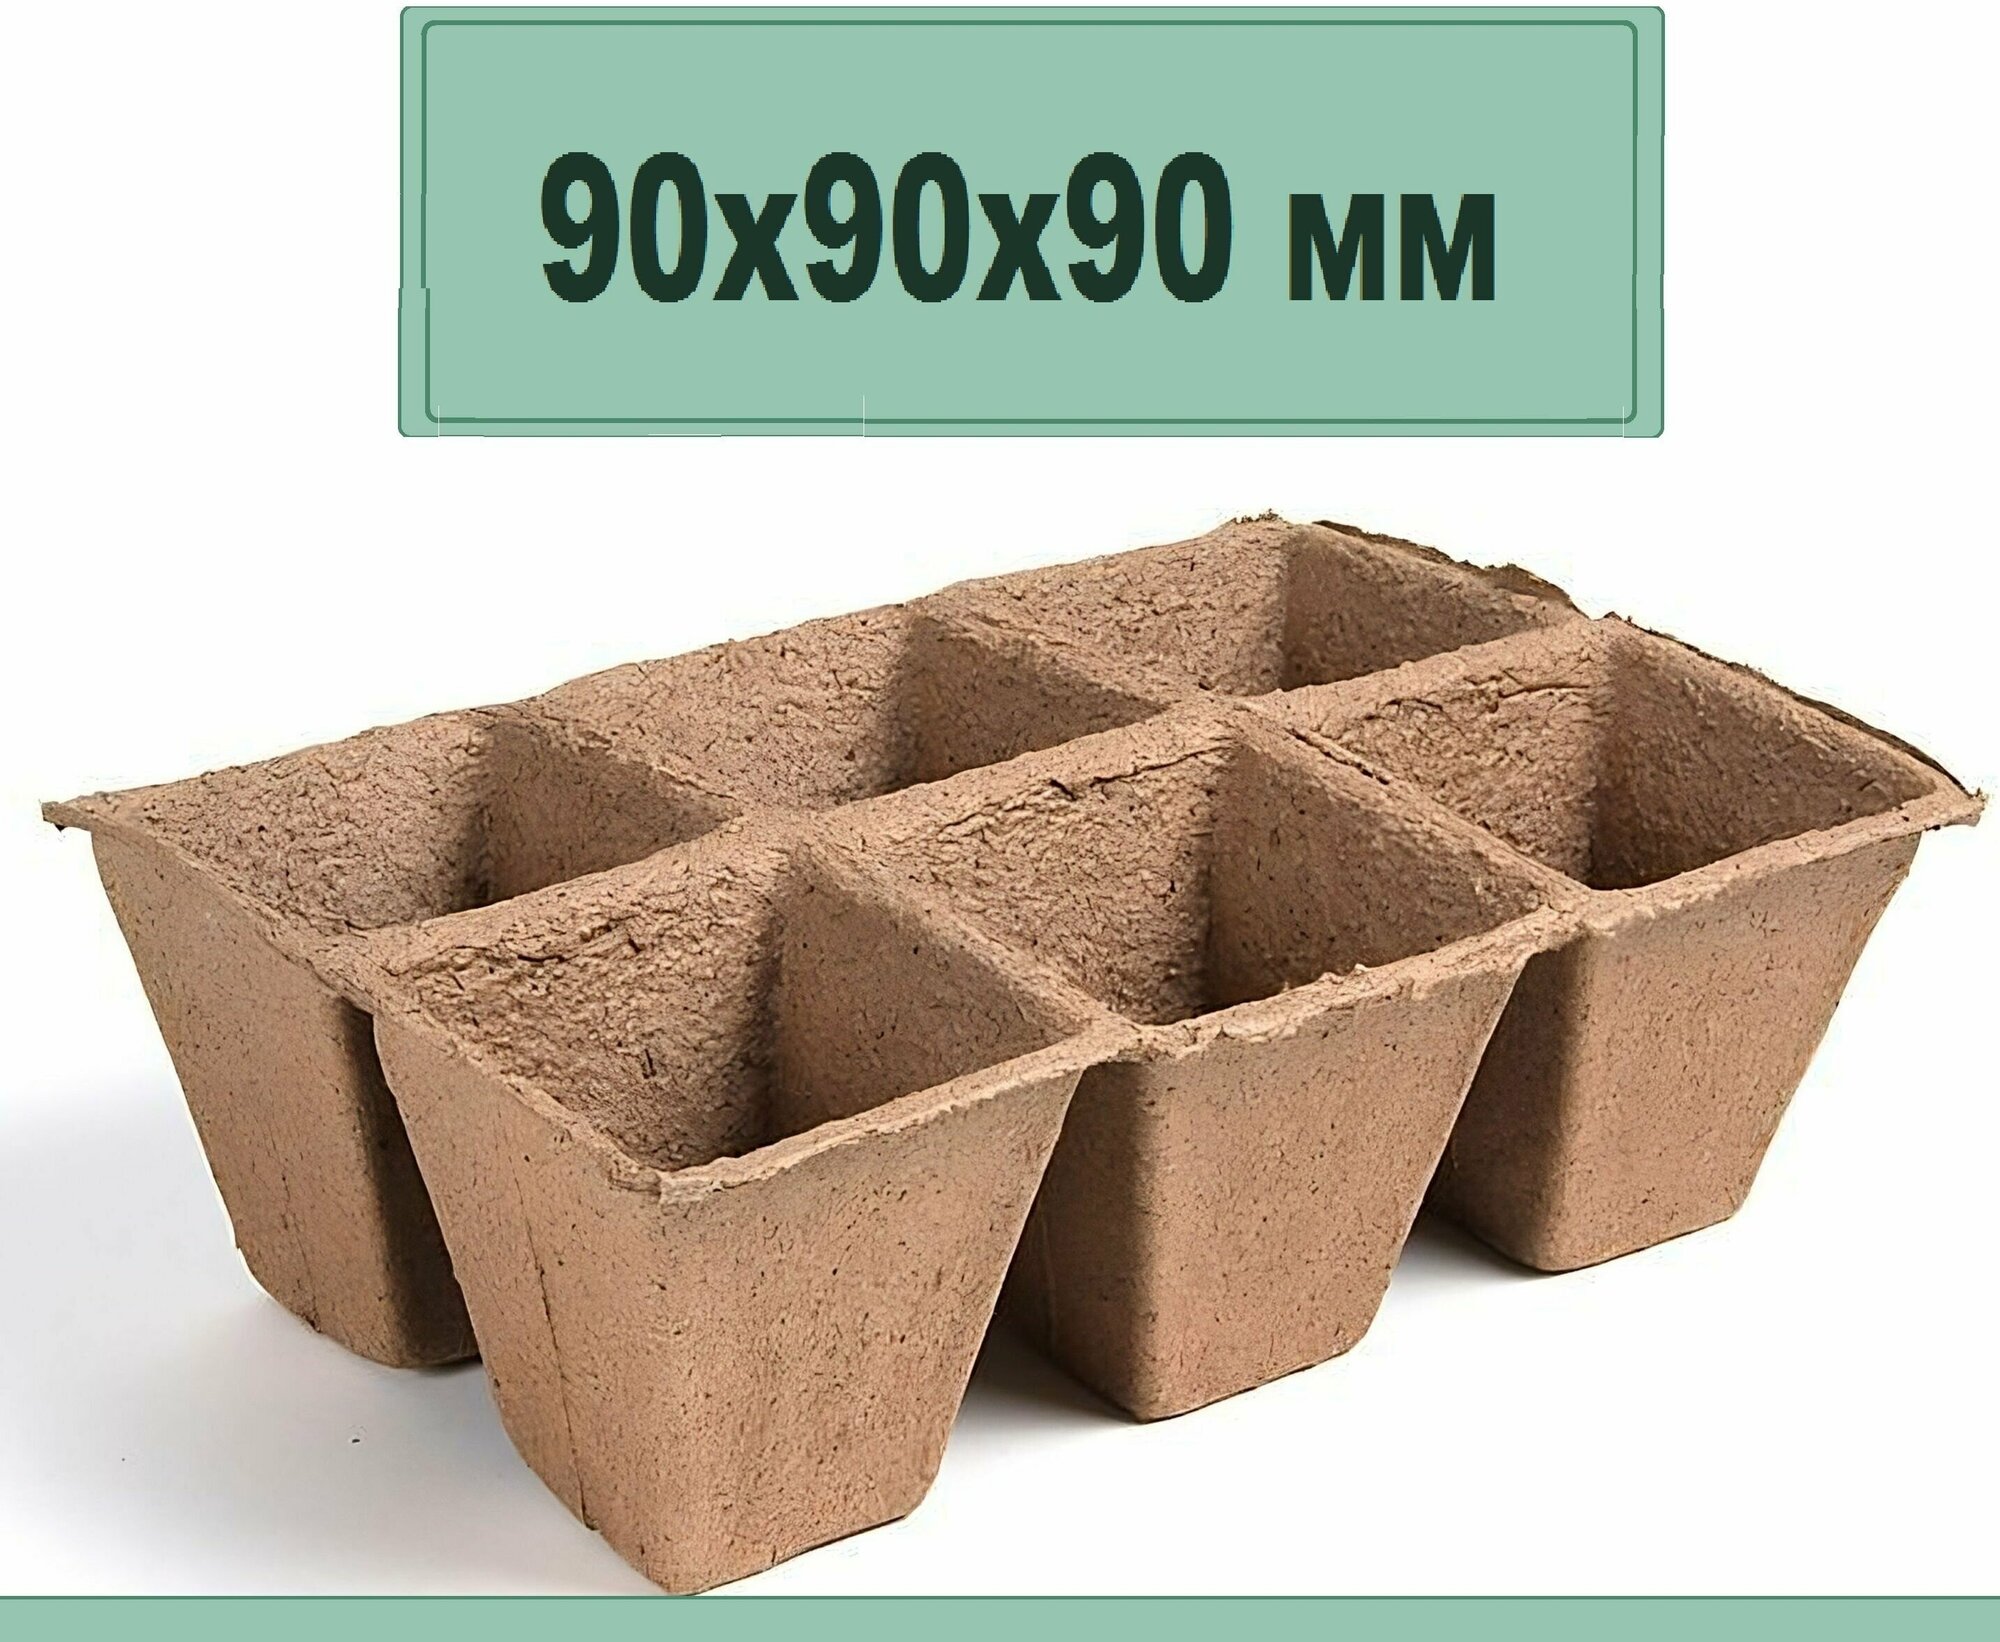 Блок торфяных горшков 6 ячеек 90х90х90мм. Емкости удобны и практичны сохраняют структуру при поливе. Растворяясь постепенно превращается в удобрение